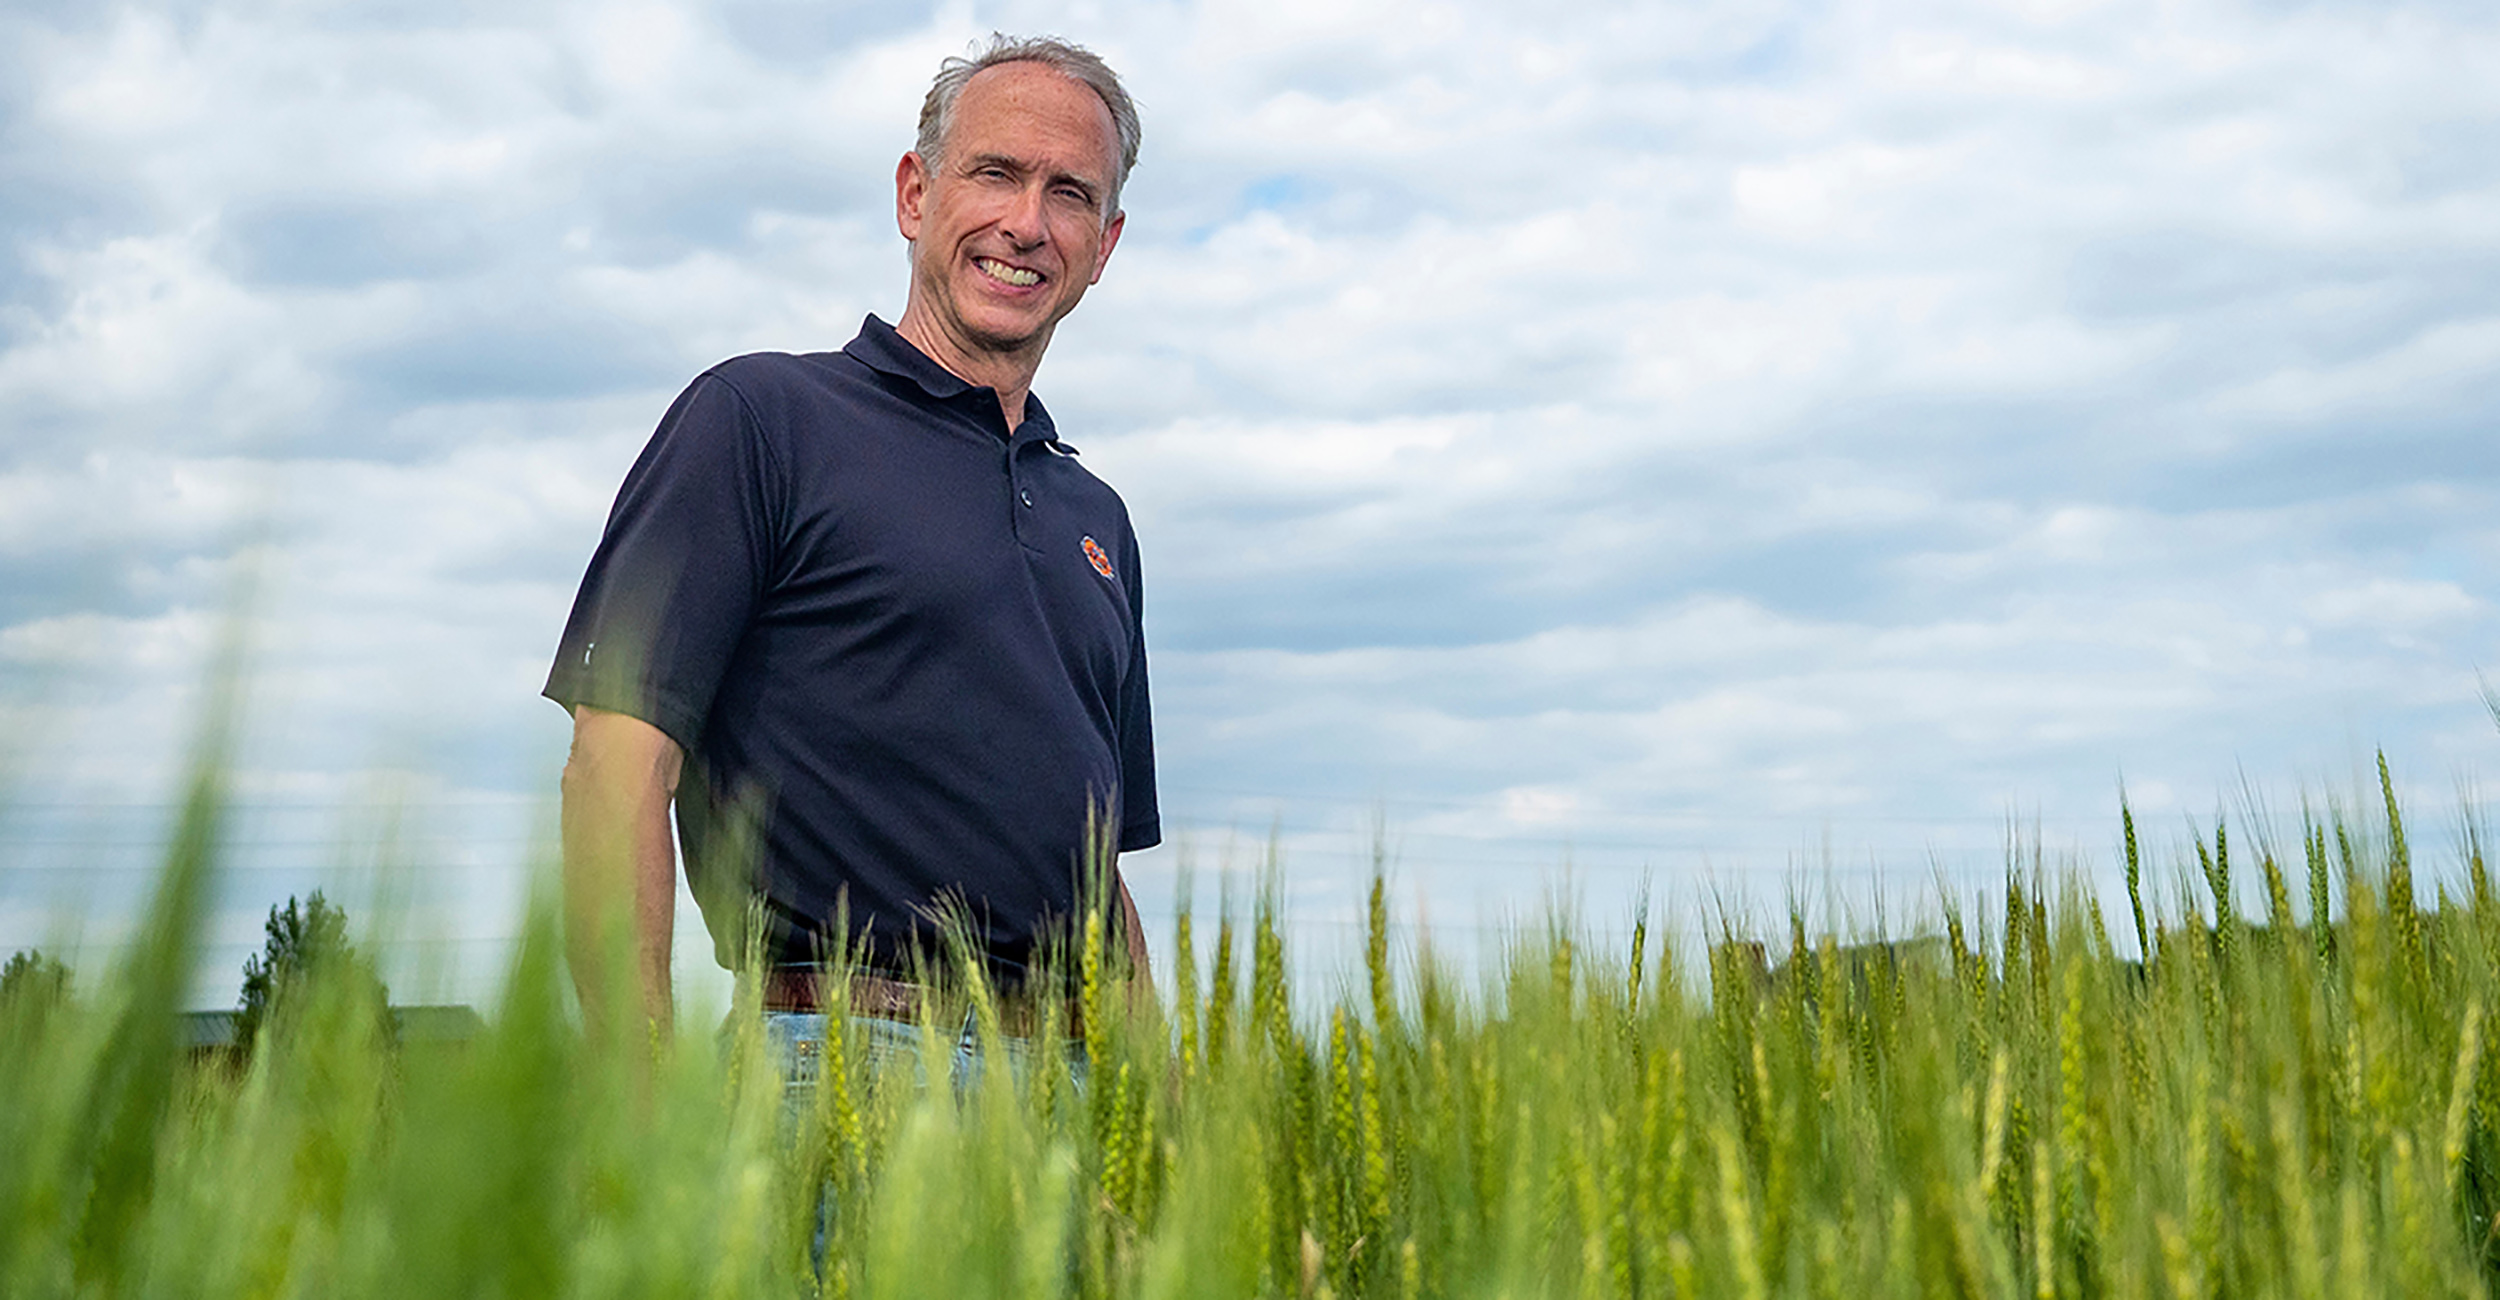 Photo of Brett Carver in a wheat field.